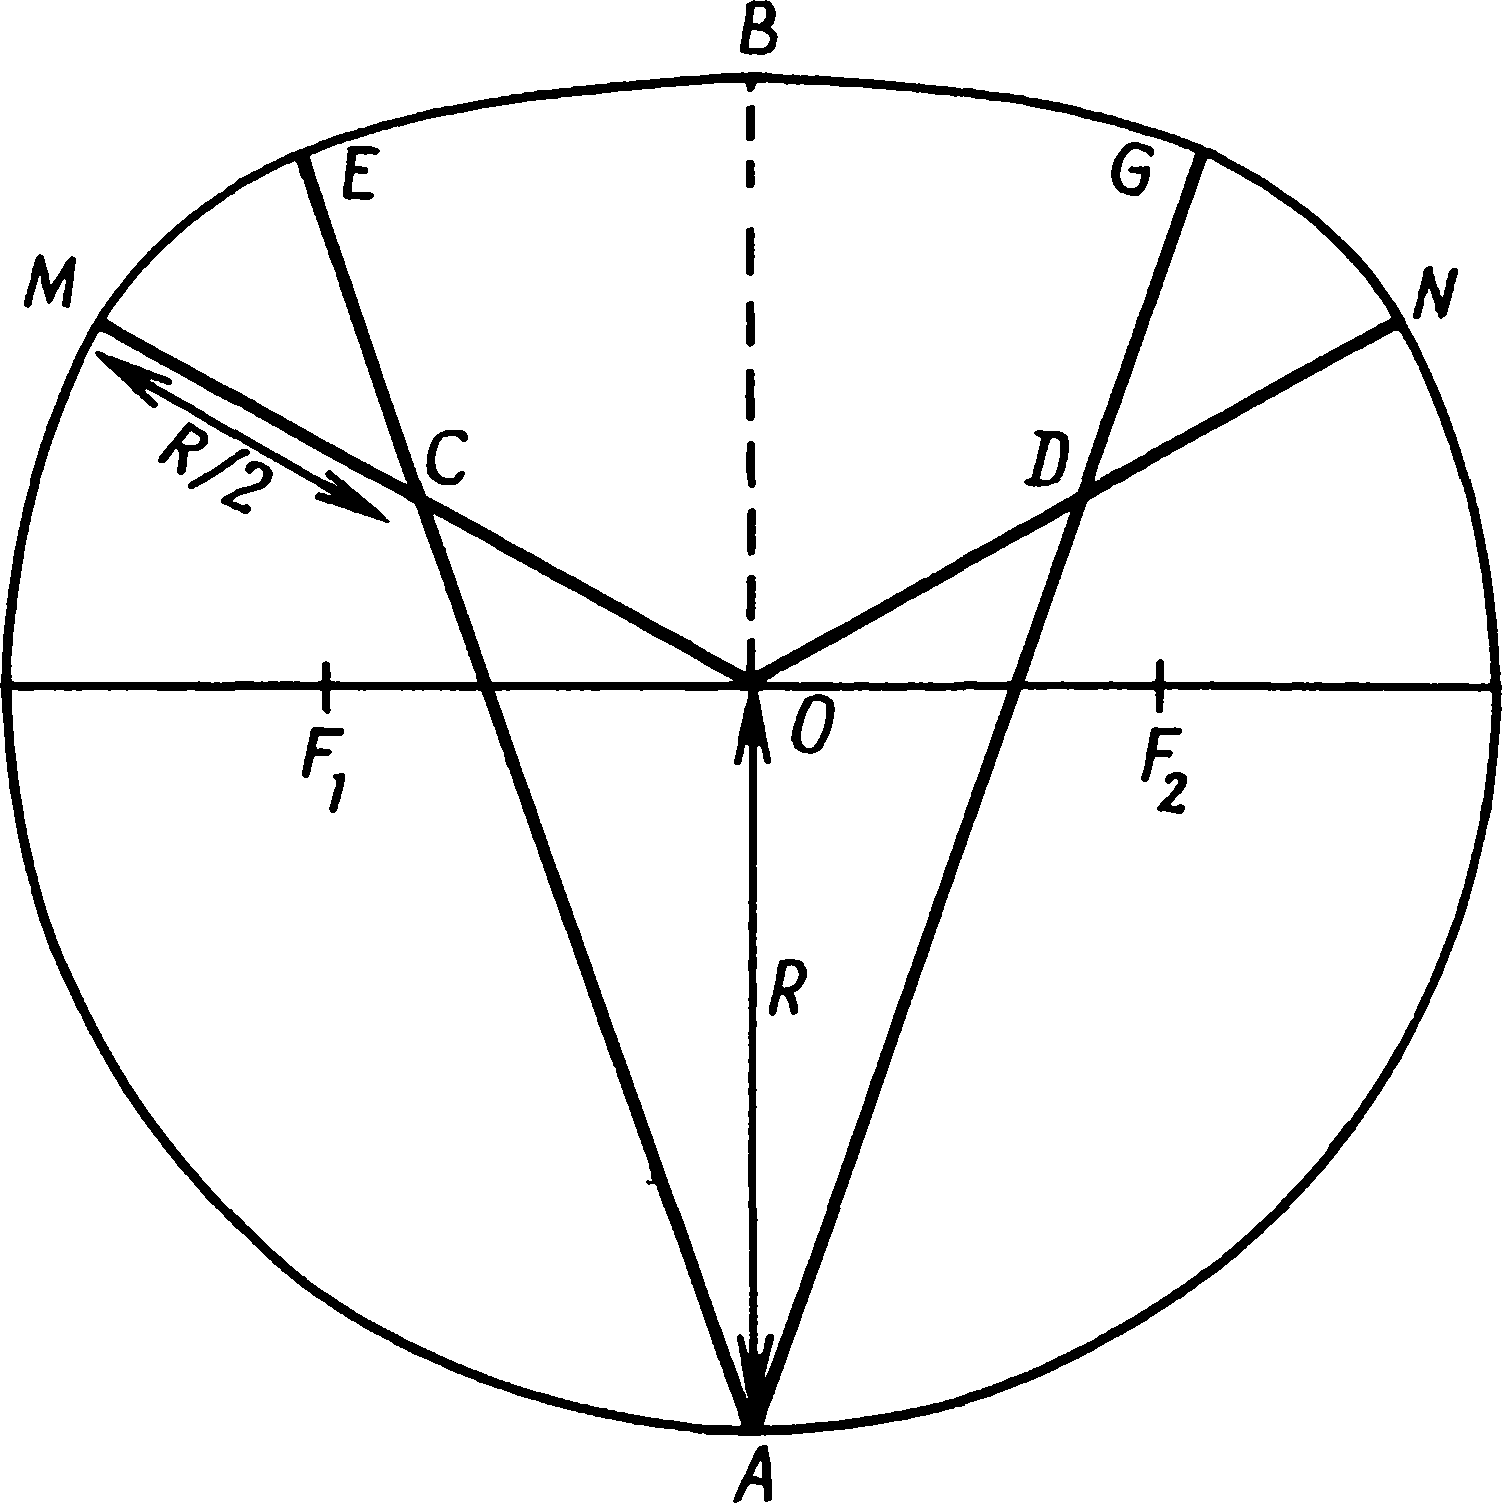 Рис. 3.3. Приплюснутый круг, тип А. Точки F1 и F2 не участвуют в построении этого круга, но они являются фокусами эллипса, который ближе всего совпадает с некруговой частью фигуры (см. рис. 3.9)